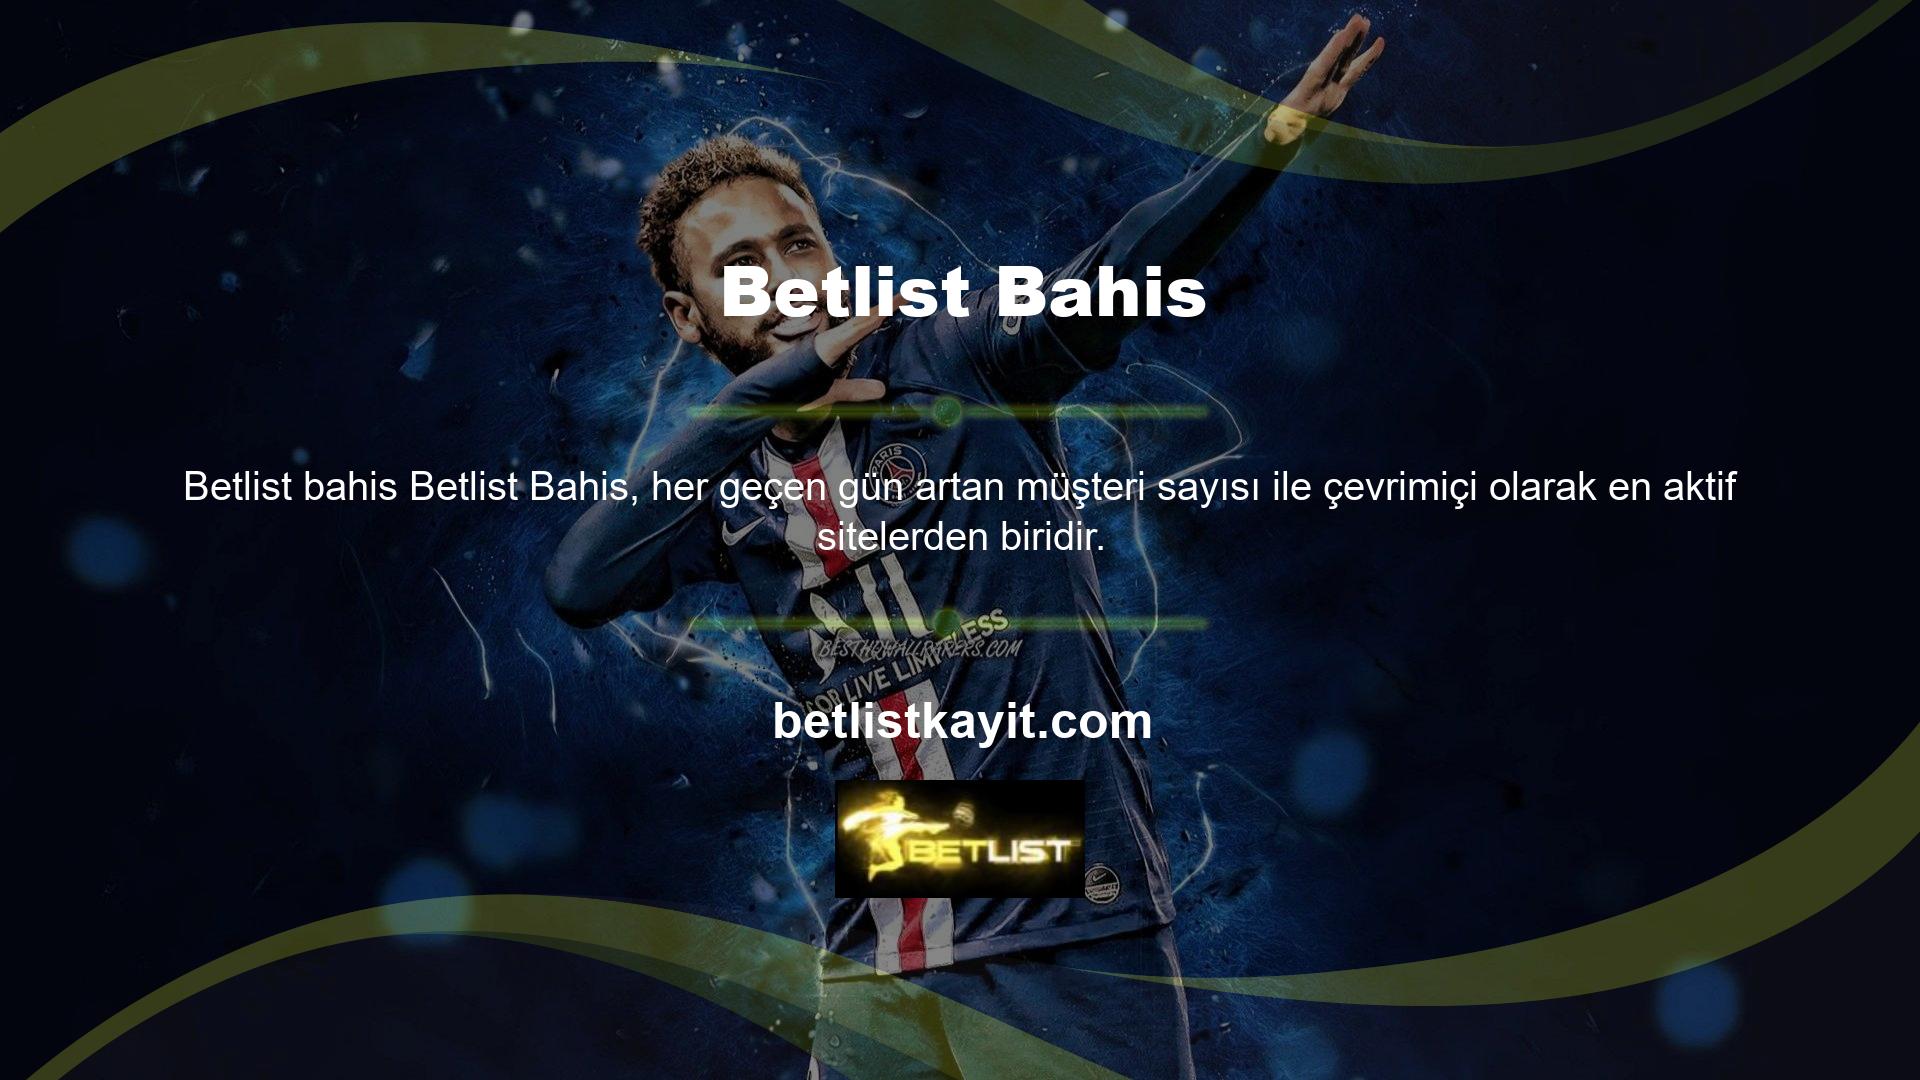 Betlist bahis sitesi programı ile birlikte güvenilir hizmet veren bir internet adresi olarak da karşınıza çıkacaktır